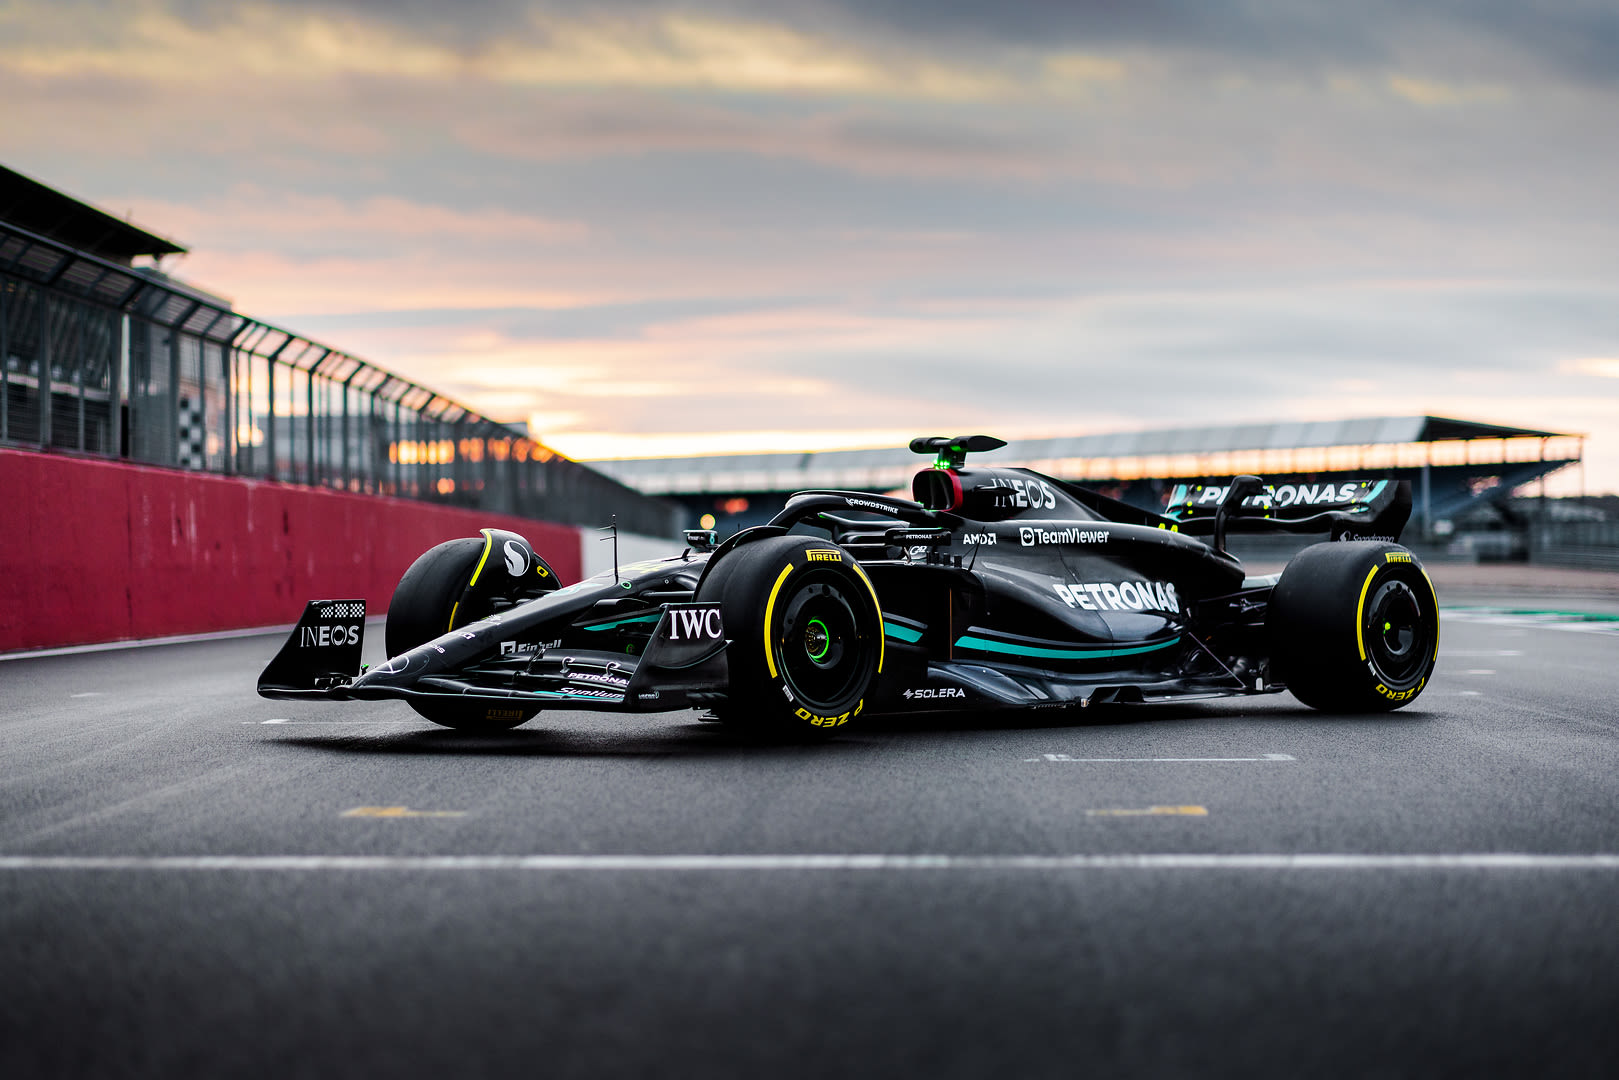 Lấy cảm hứng từ đội đua xe hơi nổi tiếng, bức tranh nền Mercedes-AMG PETRONAS F1 Wallpaper là công sức tuyệt vời trong thiết kế sống động của nó. Những chiếc xe đua đầy tốc độ tràn đầy quyết tâm để chiến thắng, khiến bạn muốn tham gia ngay lập tức. Khám phá tất cả các chi tiết và cảm nhận niềm đam mê với bức tranh nền này!